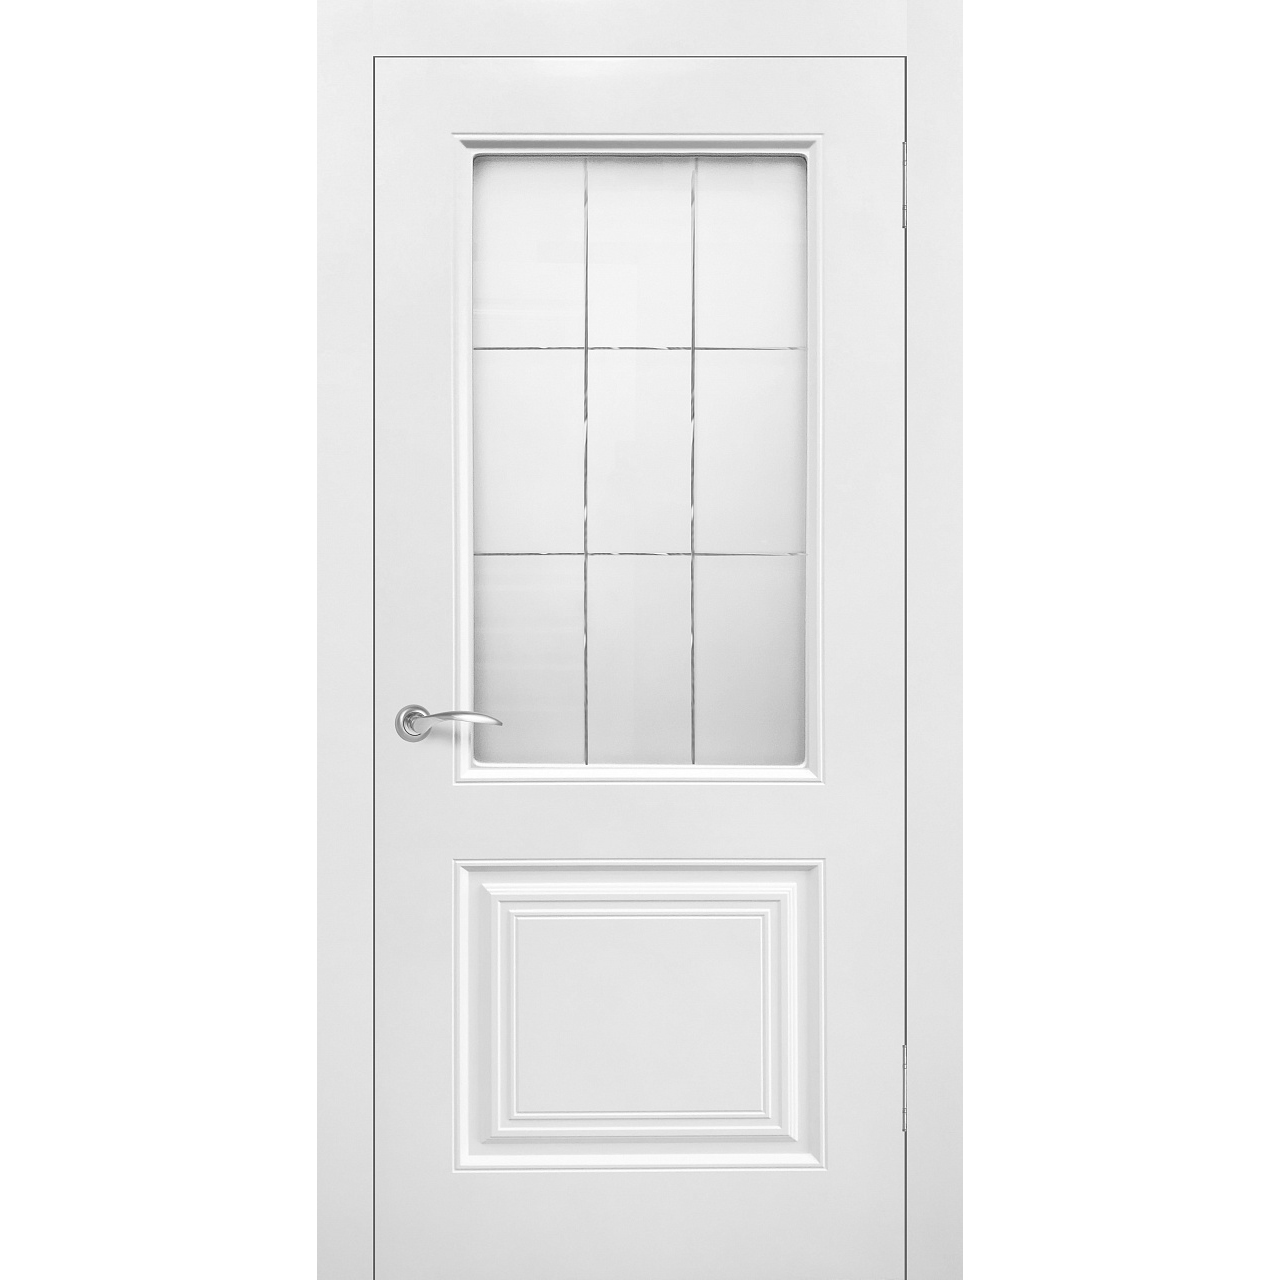 Межкомнатная дверь эмаль классика «Роял 2» (со стеклом)